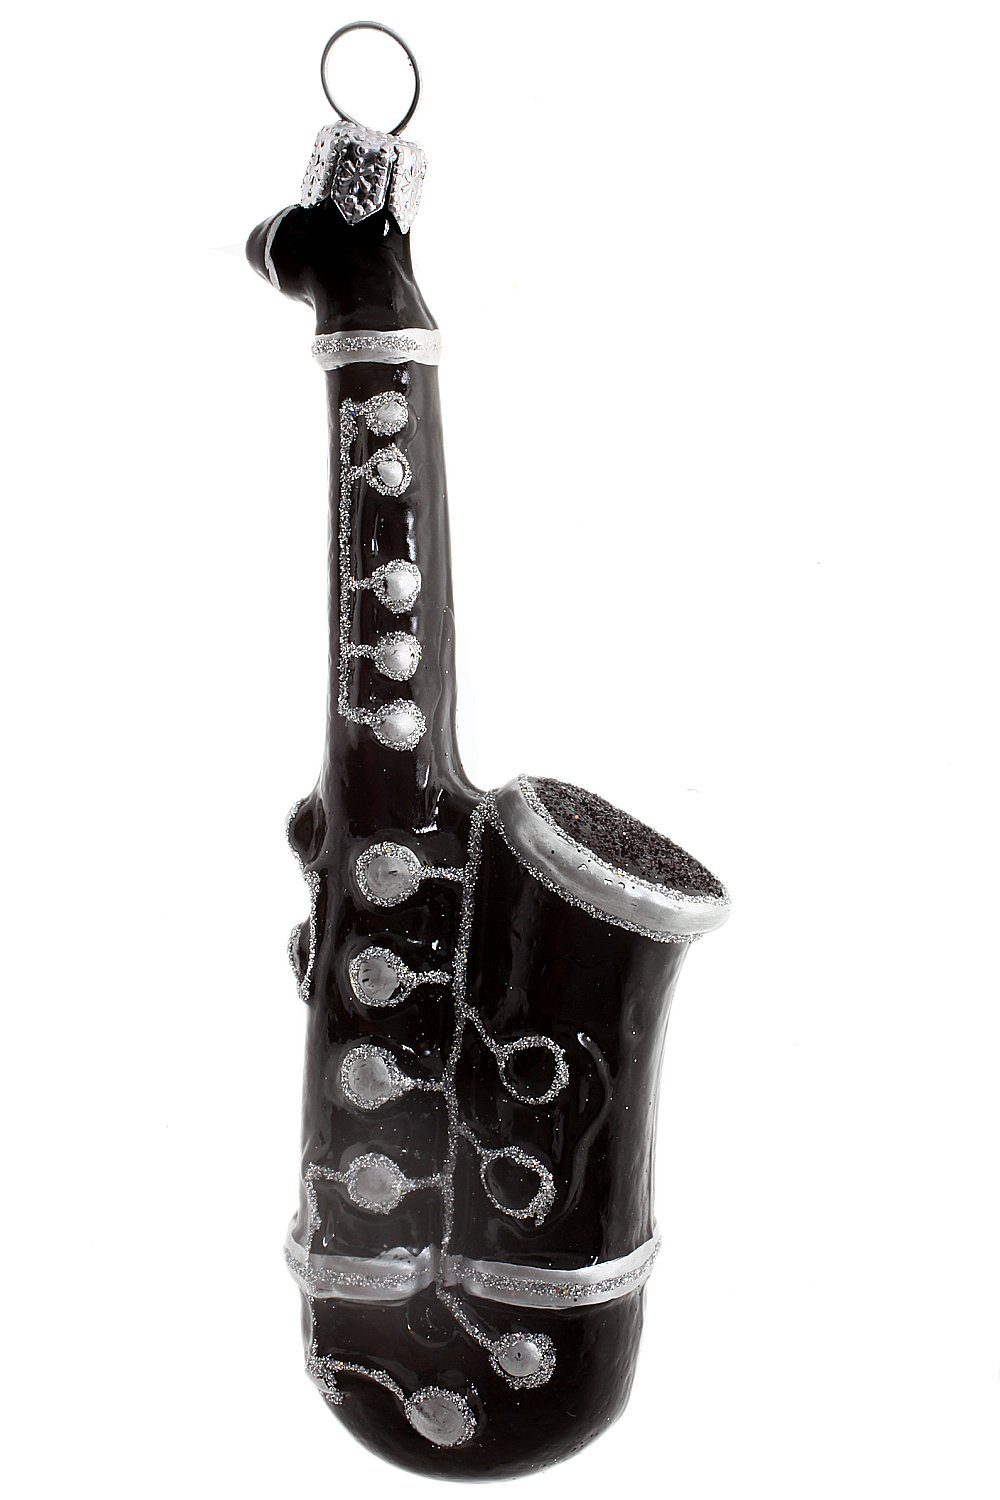 Hamburger Weihnachtskontor Christbaumschmuck Saxophon in schwarz, Dekohänger - mundgeblasen - handdekoriert